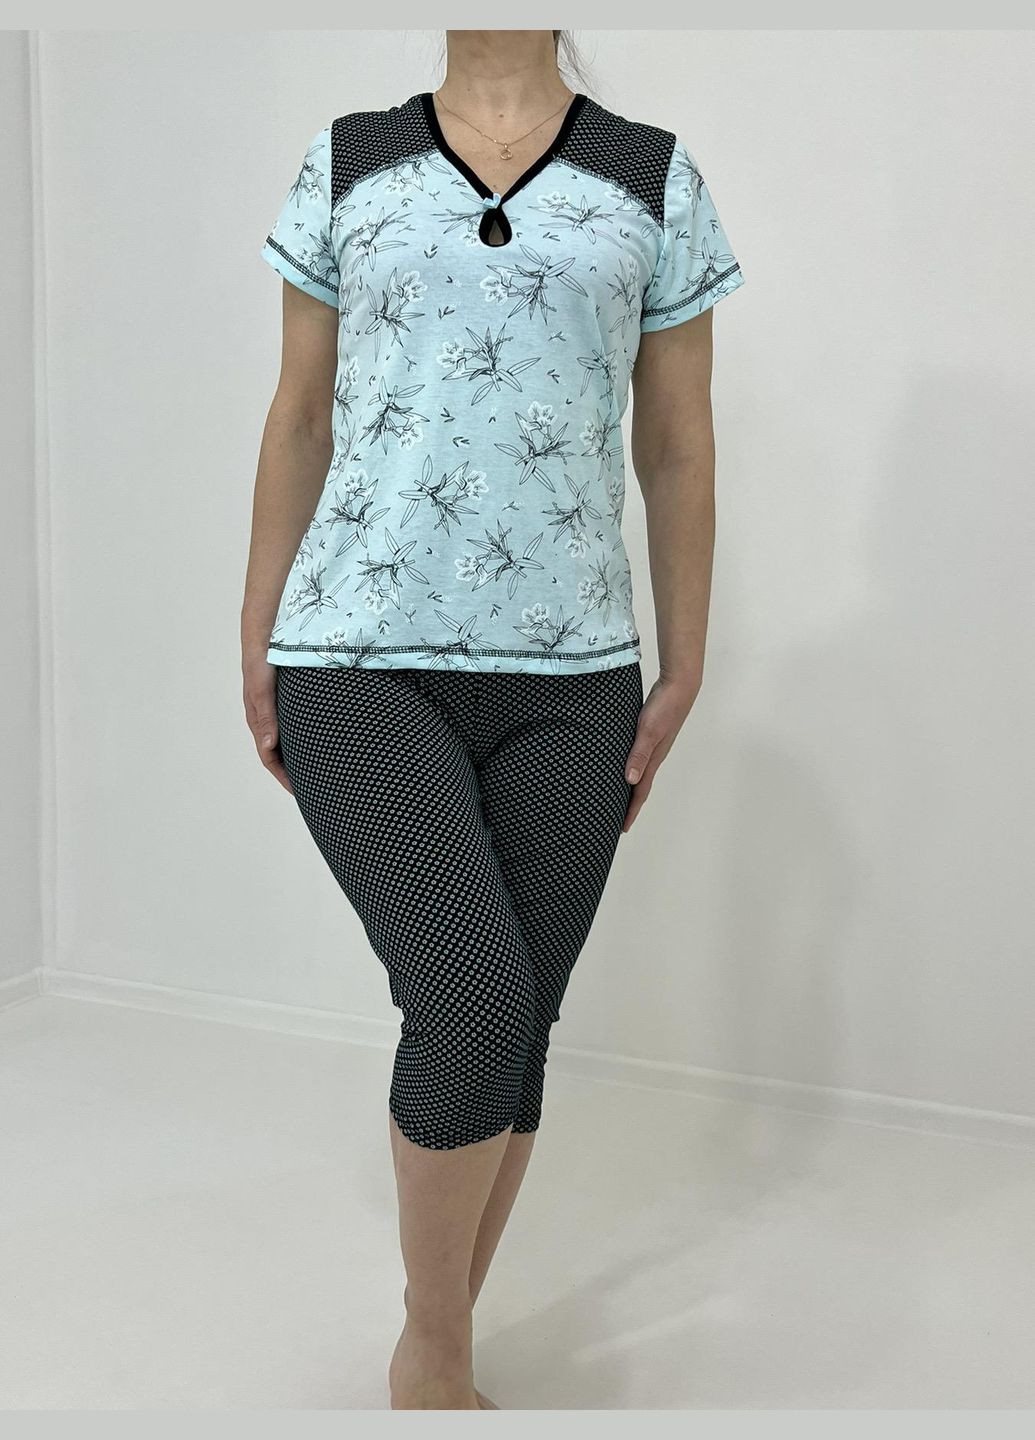 Бирюзовая всесезон домашний женский комплект viktoriya (бриджи + футболка) 58-60 бирюзовый 71444545-3 Triko